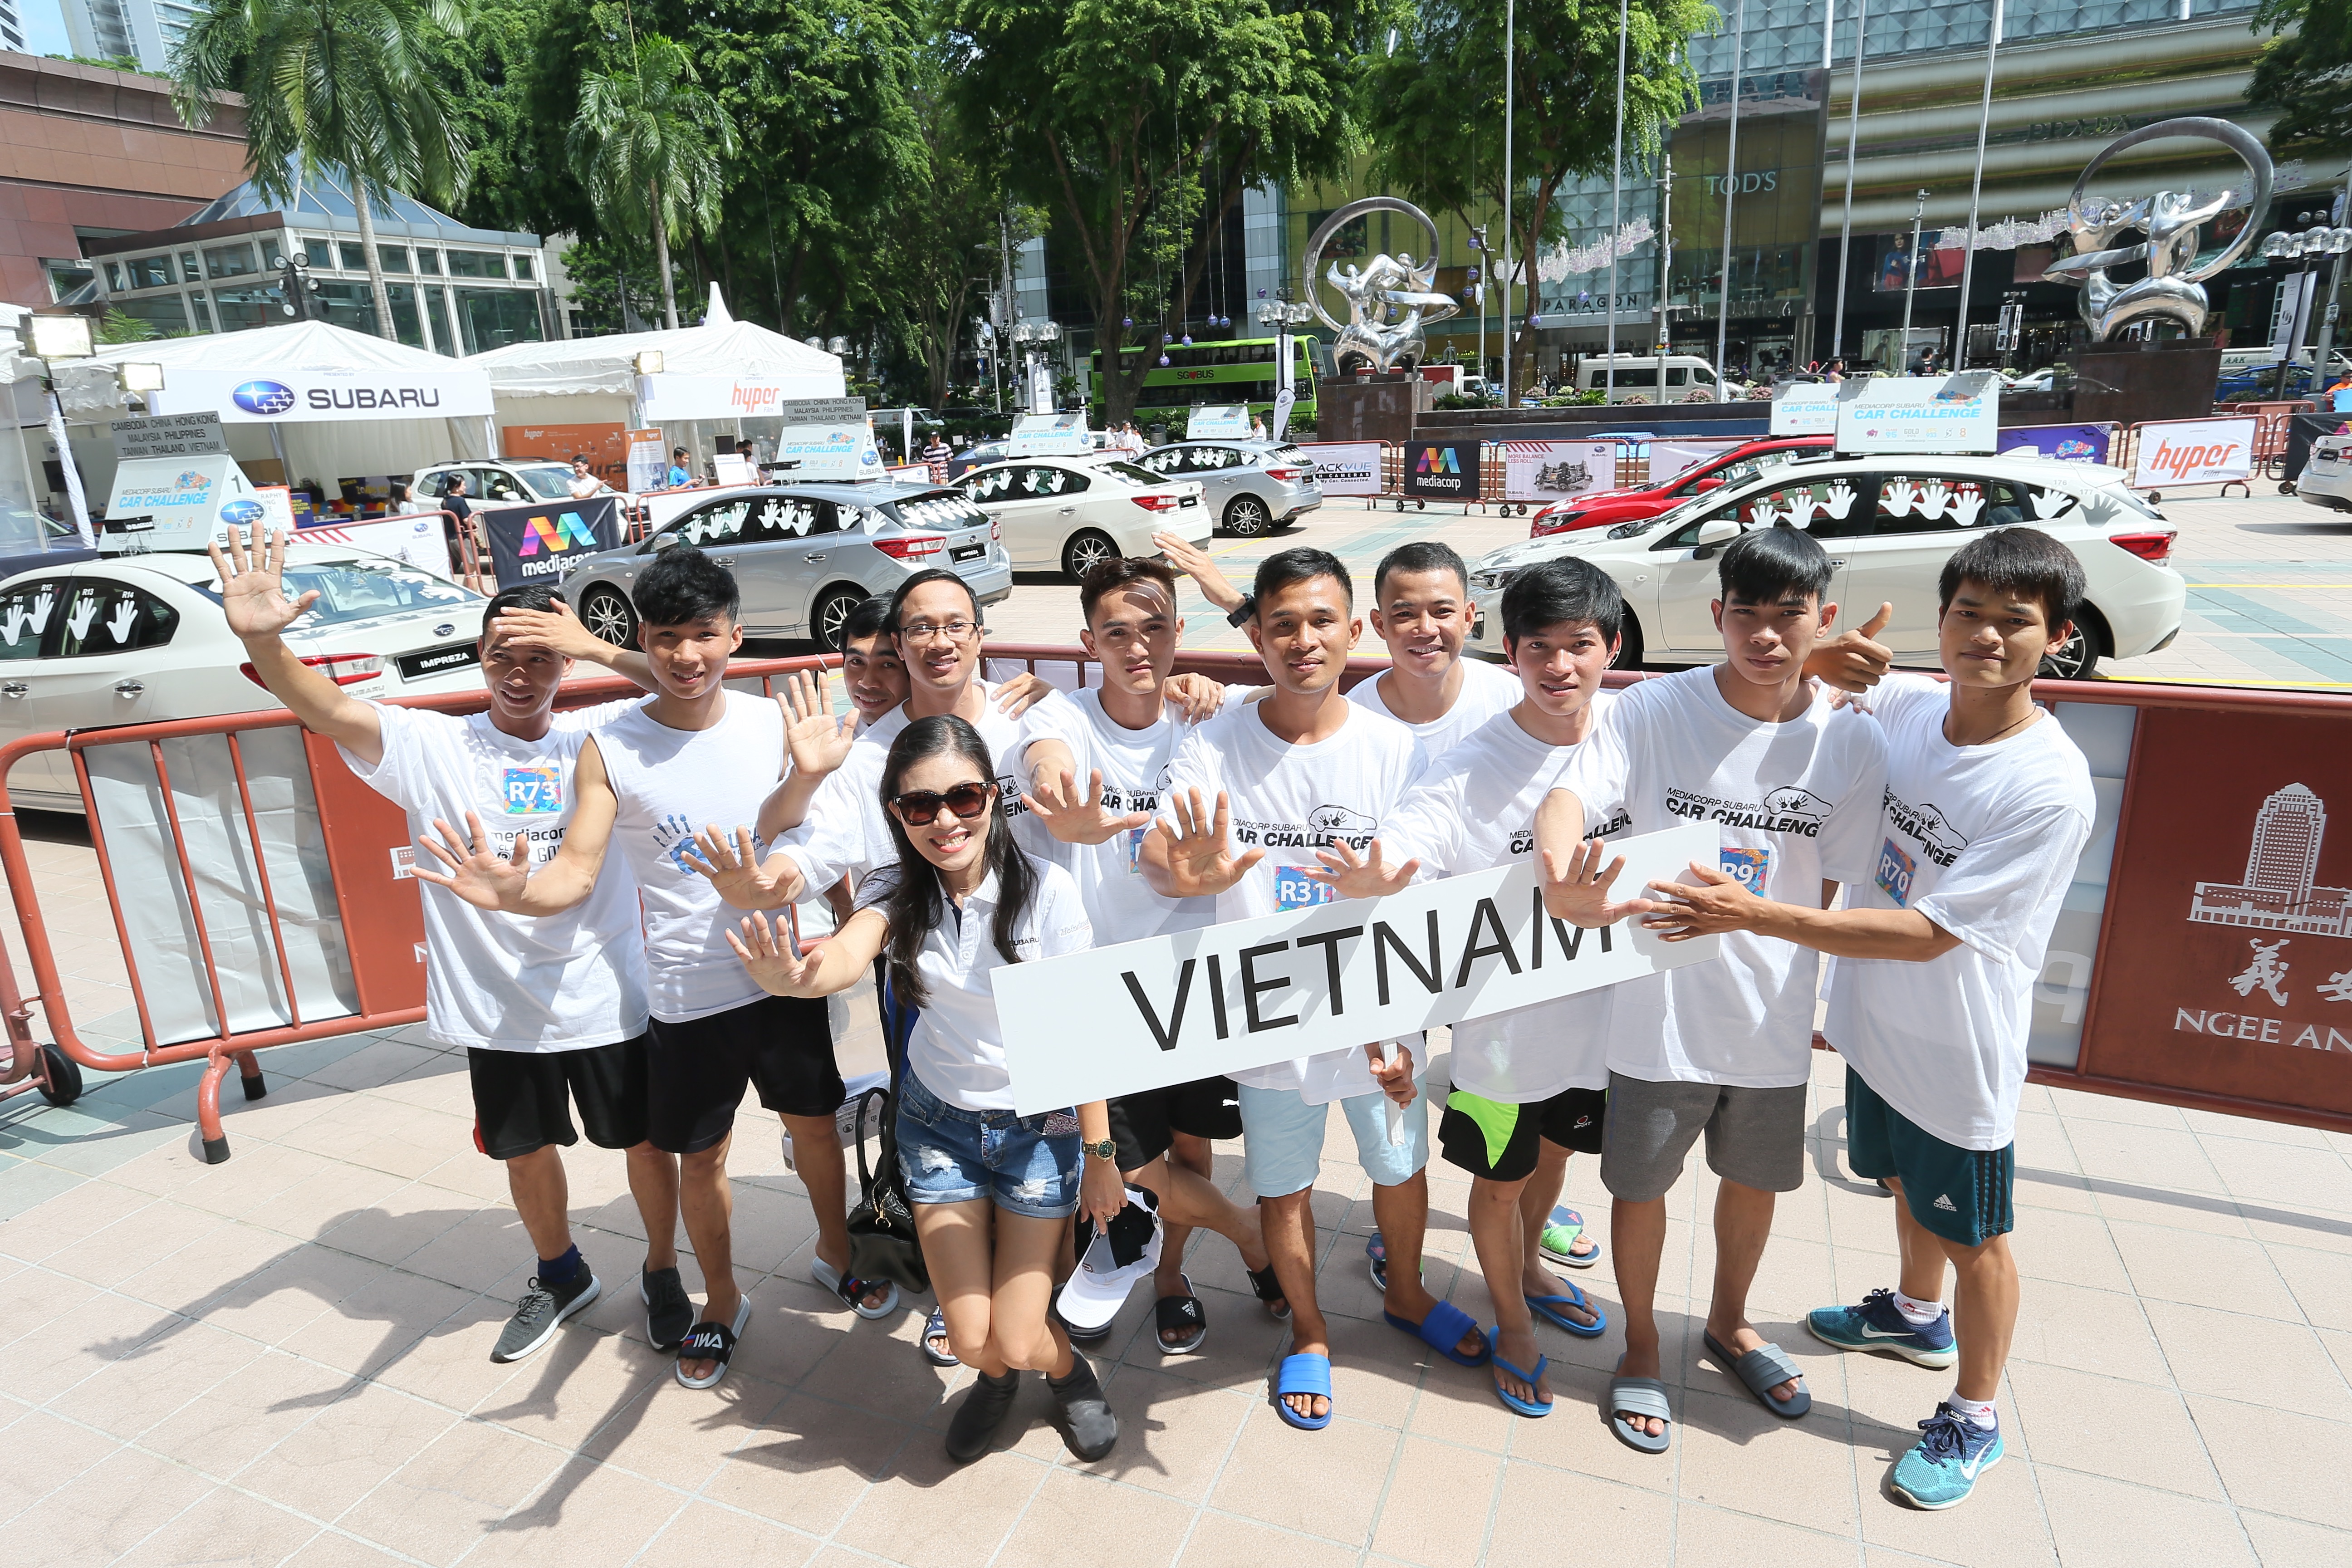 Thí sinh Việt Nam đoạt Á quân giải “đặt tay lâu nhất trúng xe Subaru”